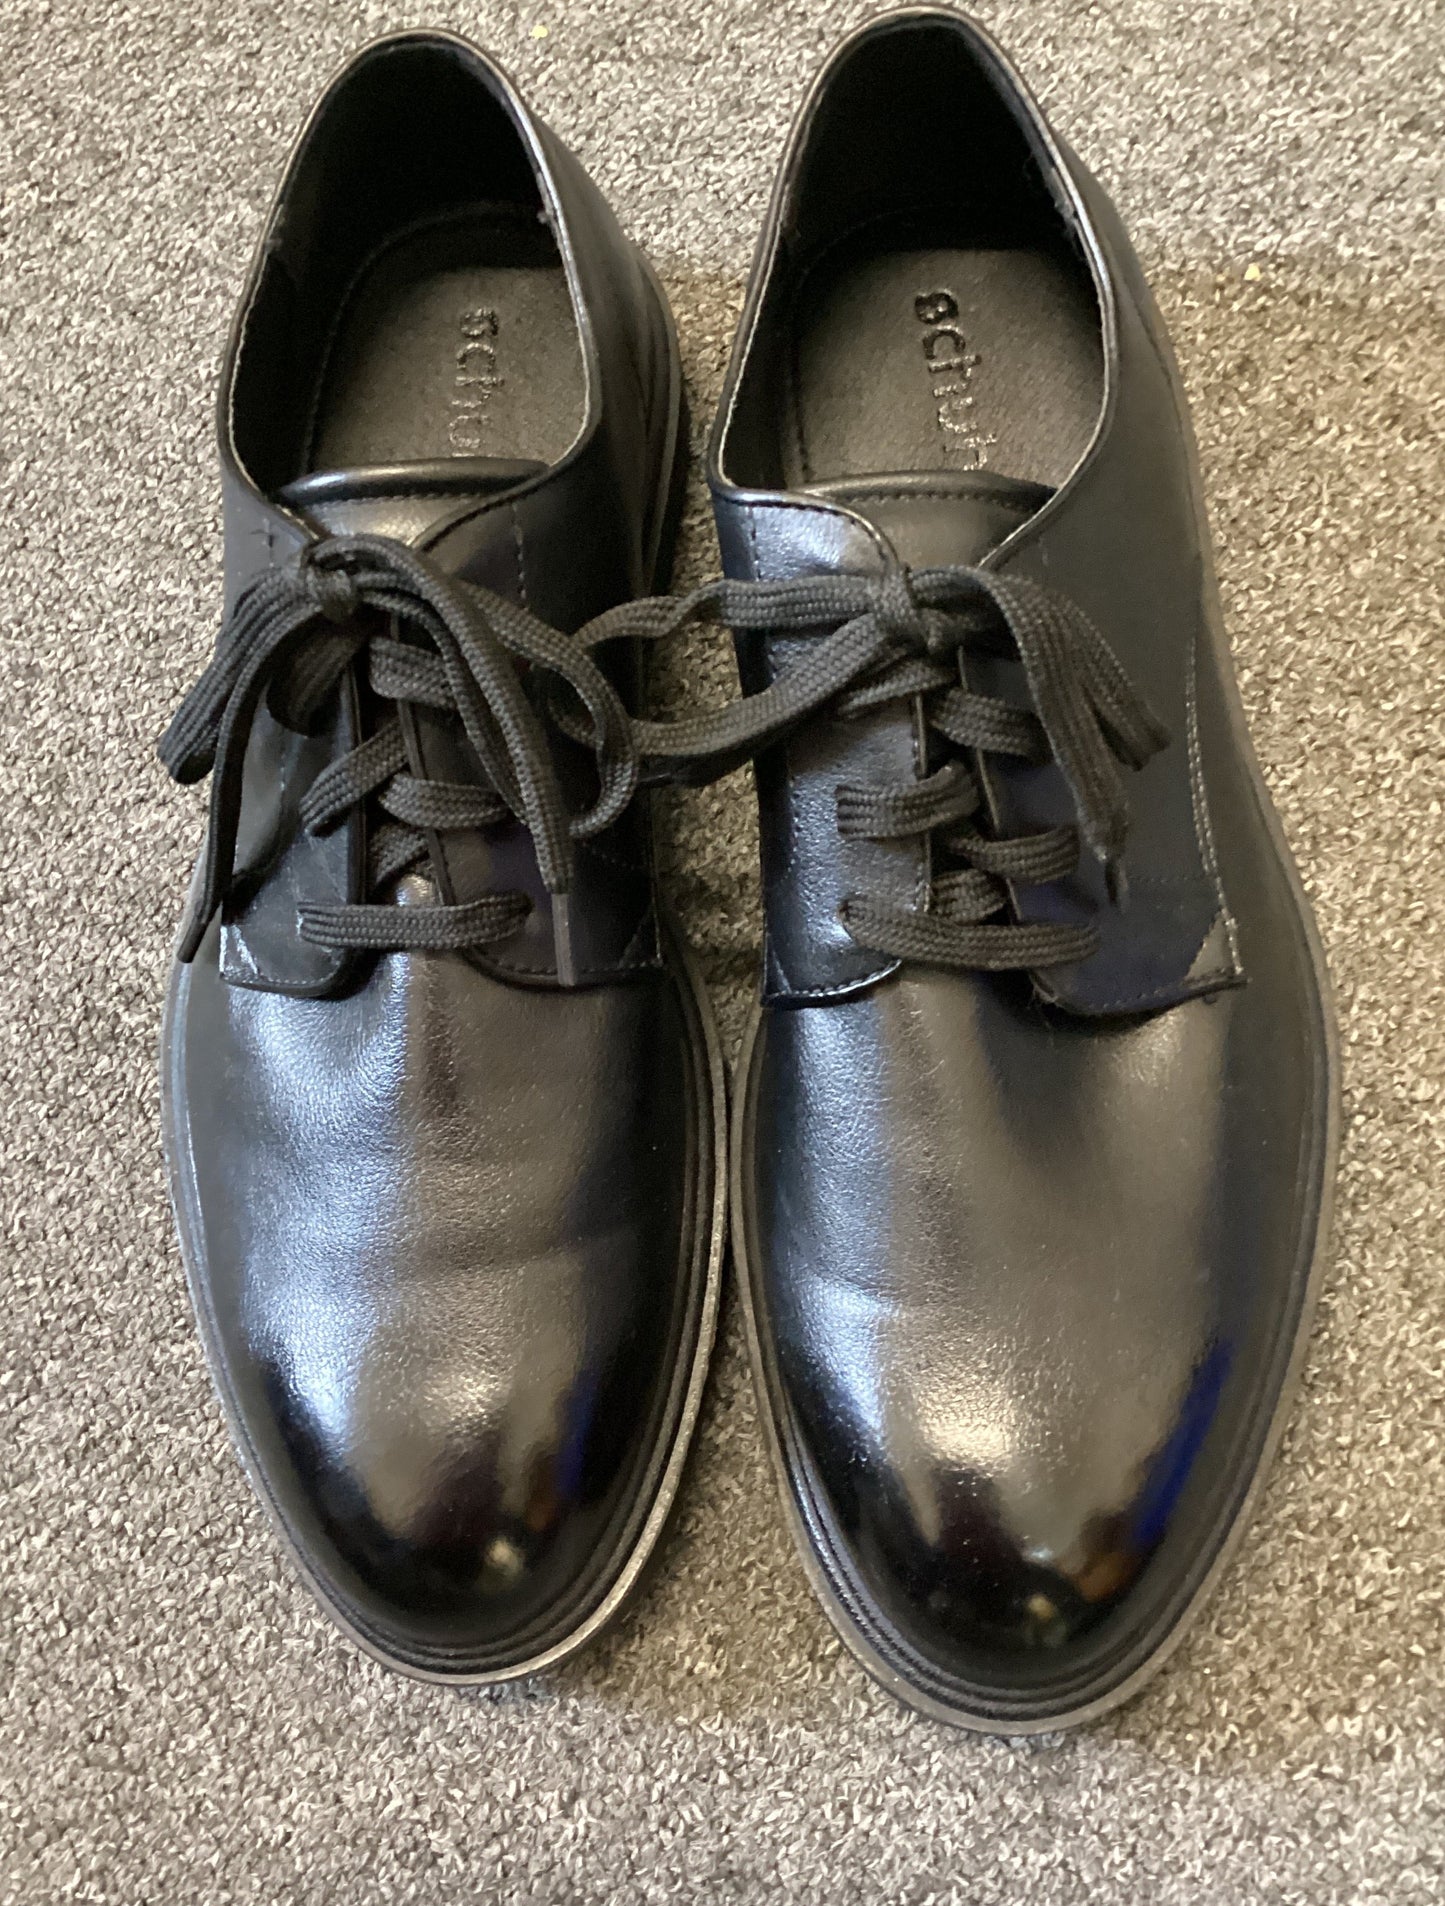 Schuh Black dress shoes size 9.